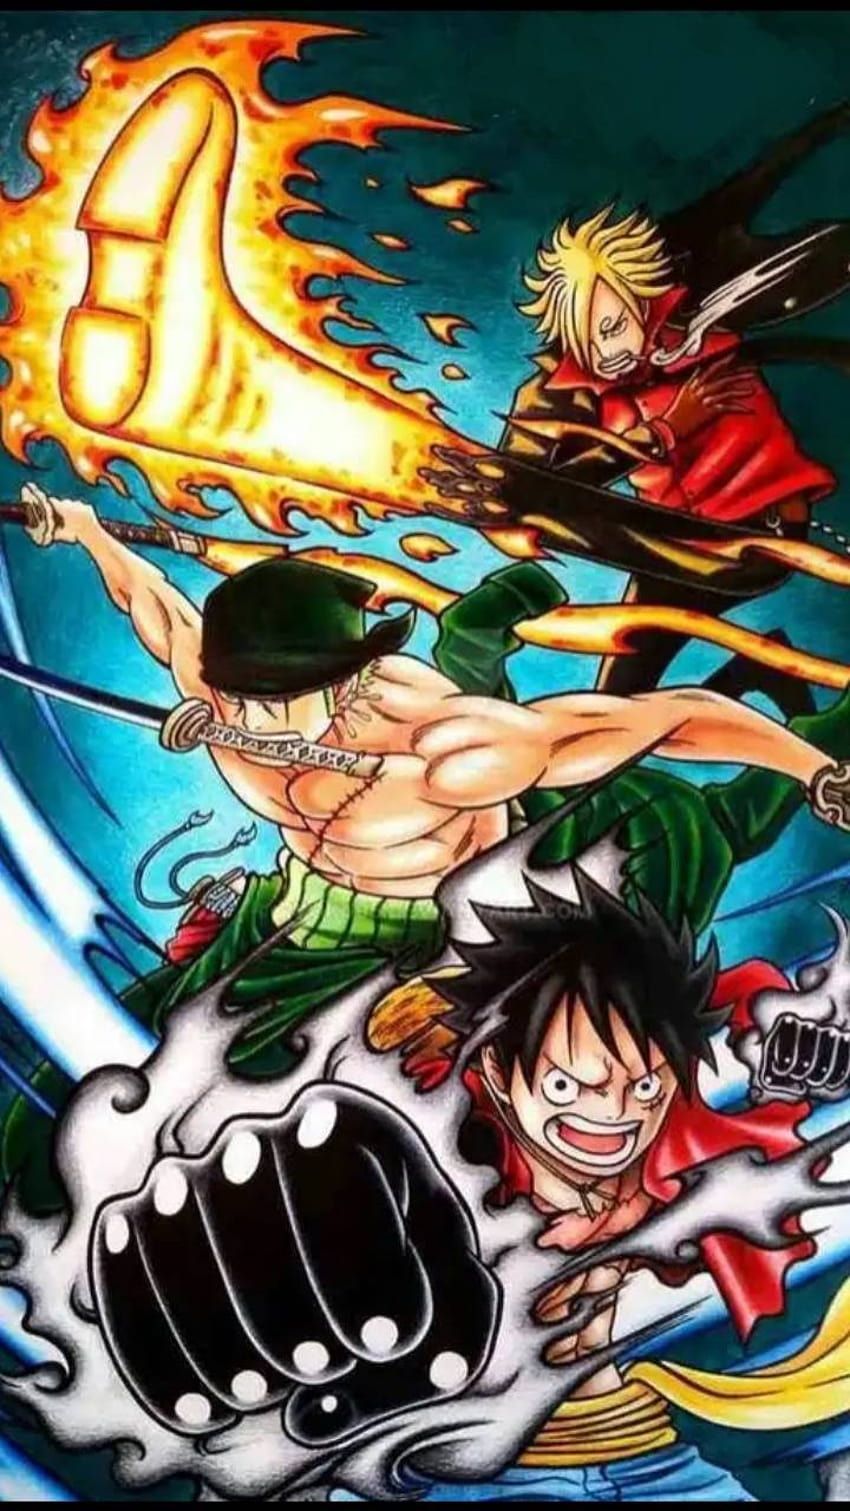 Bạn đang tìm kiếm một nền động One Piece đẹp cho điện thoại của mình? Đừng bỏ lỡ nền động HD đặc biệt này với hình ảnh Luffy, Zoro và Sanji - ba người anh hùng vĩ đại của bộ truyện này. Thật tuyệt vời khi có thể mang cả thế giới One Piece trên điện thoại của mình.